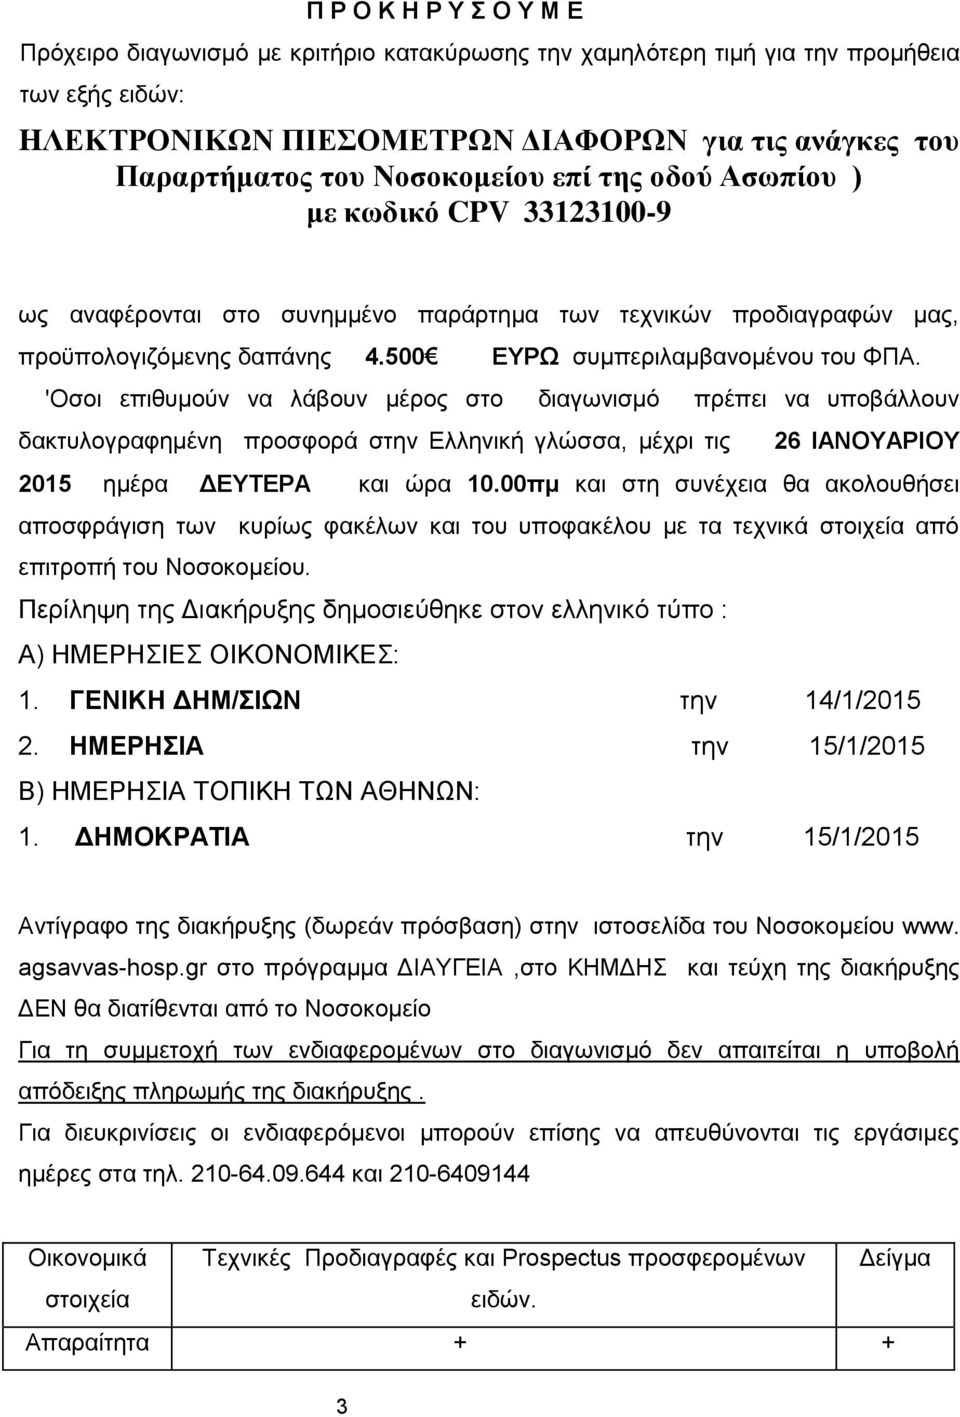 'Οσοι επιθυμούν να λάβουν μέρος στο διαγωνισμό πρέπει να υποβάλλουν δακτυλογραφημένη προσφορά στην Ελληνική γλώσσα, μέχρι τις 26 ΙΑΝΟΥΑΡΙΟΥ 2015 ημέρα ΔΕΥΤΕΡΑ και ώρα 10.